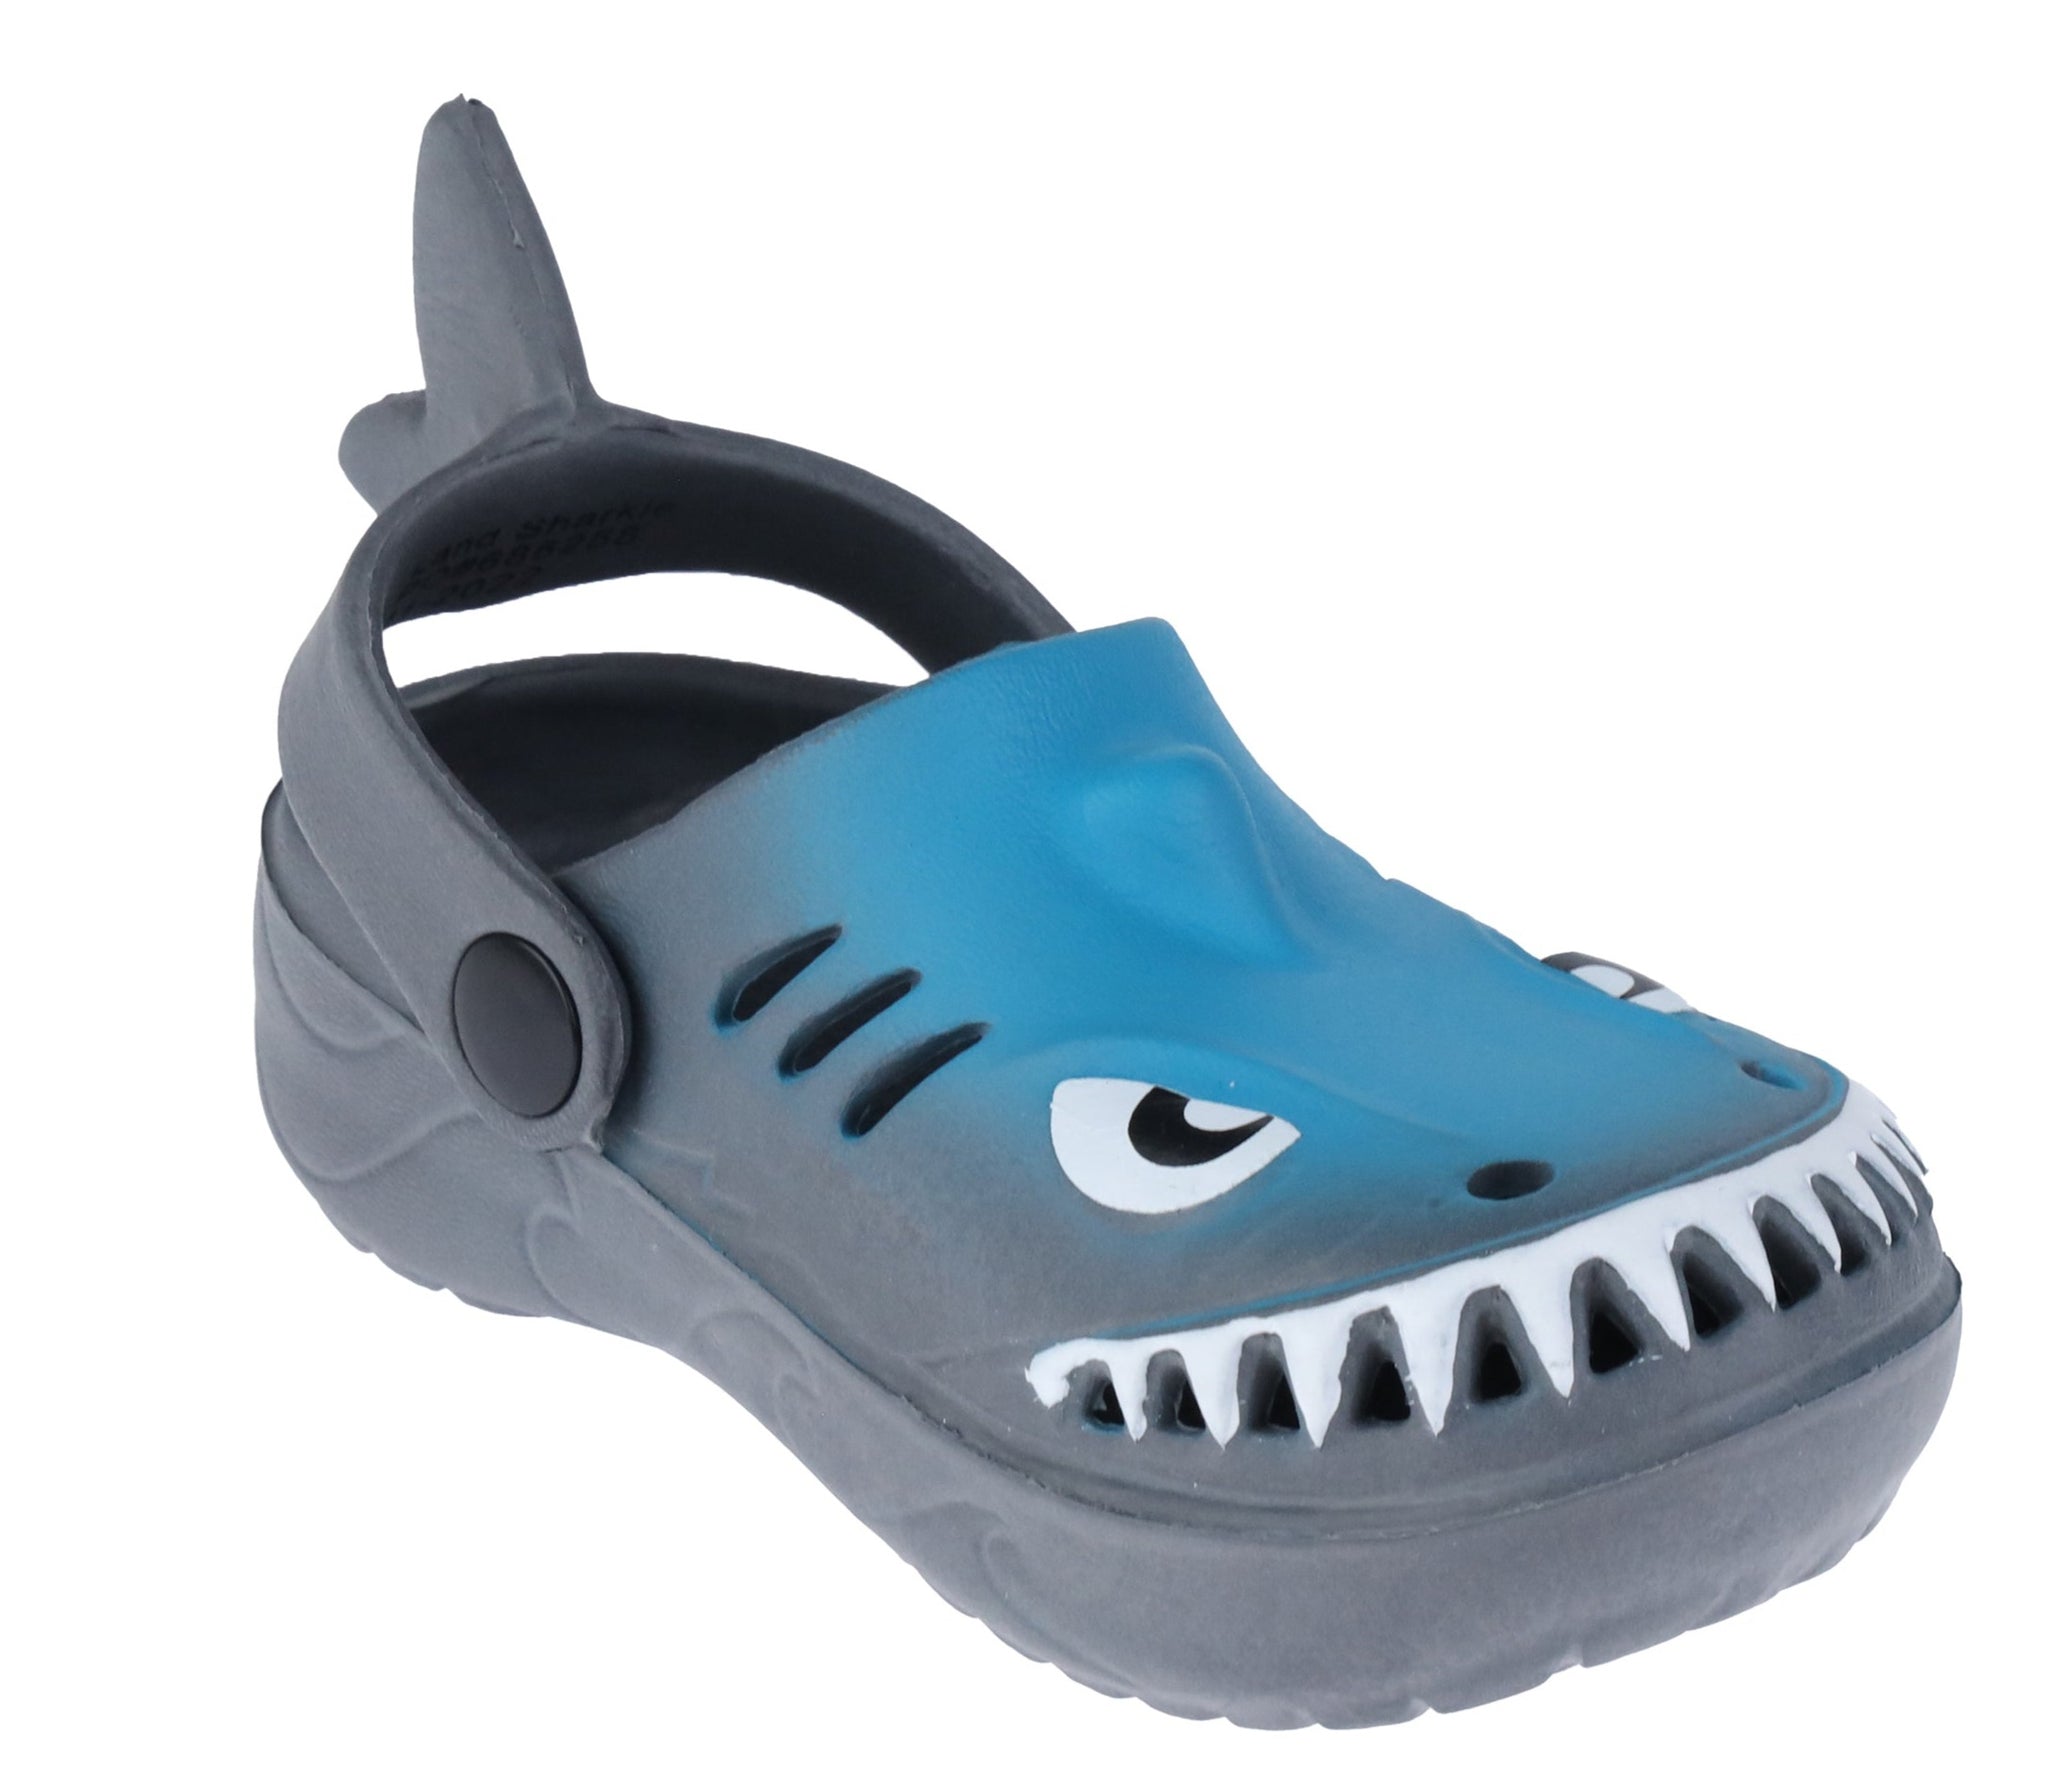 LV Shark Clog - Shoes